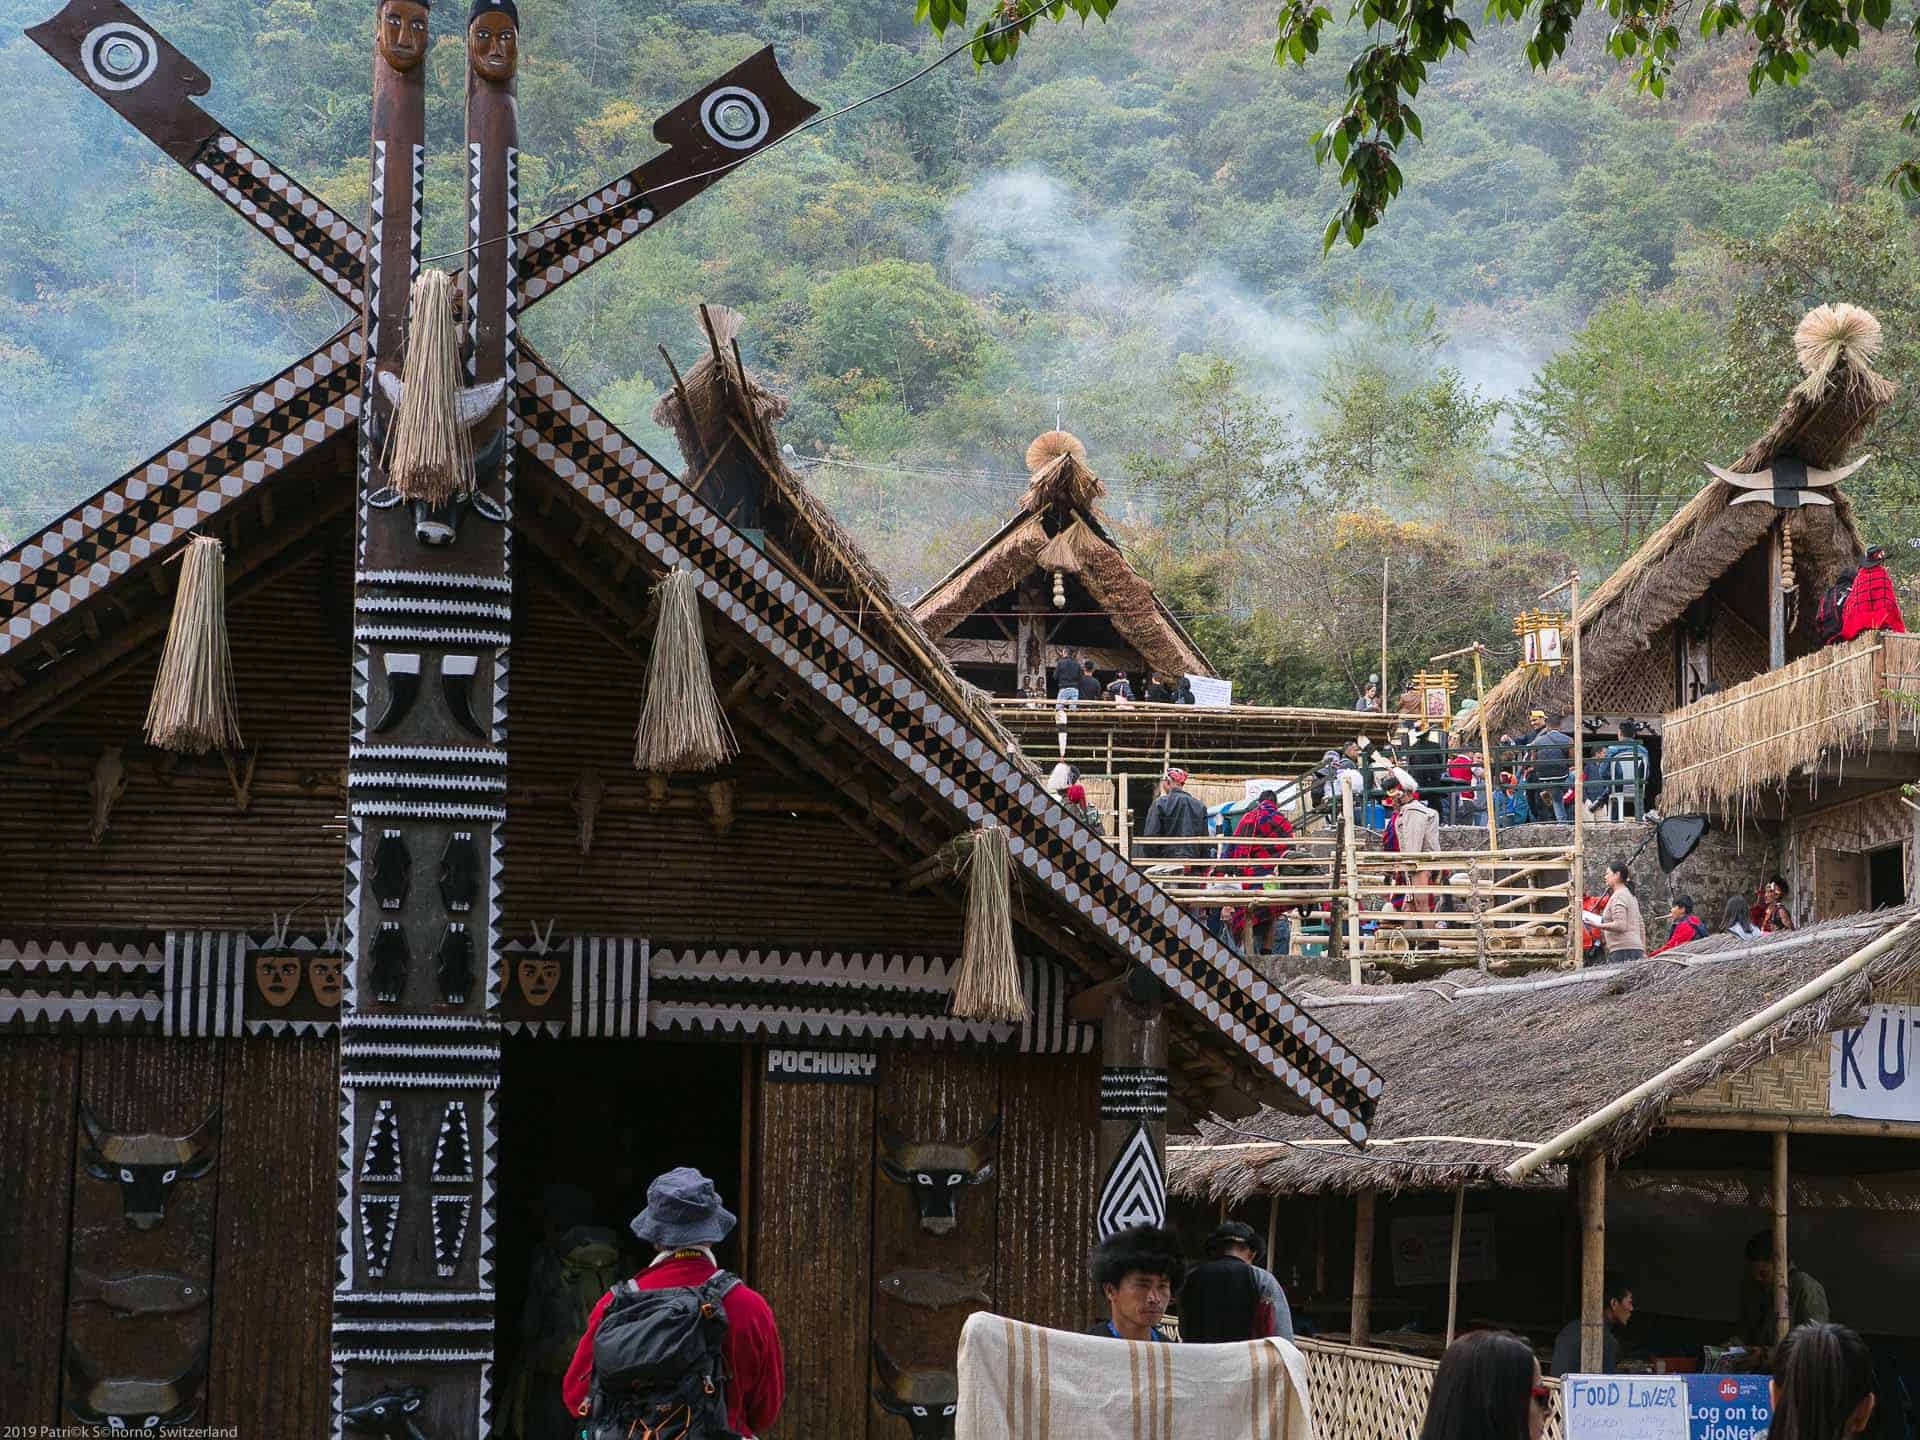 Bamboo Retreat Hotel - image "Nagaland - Reisebericht von Teeplantagen und dem Hornbill Festival - Informationen für die Indien Reise" 324